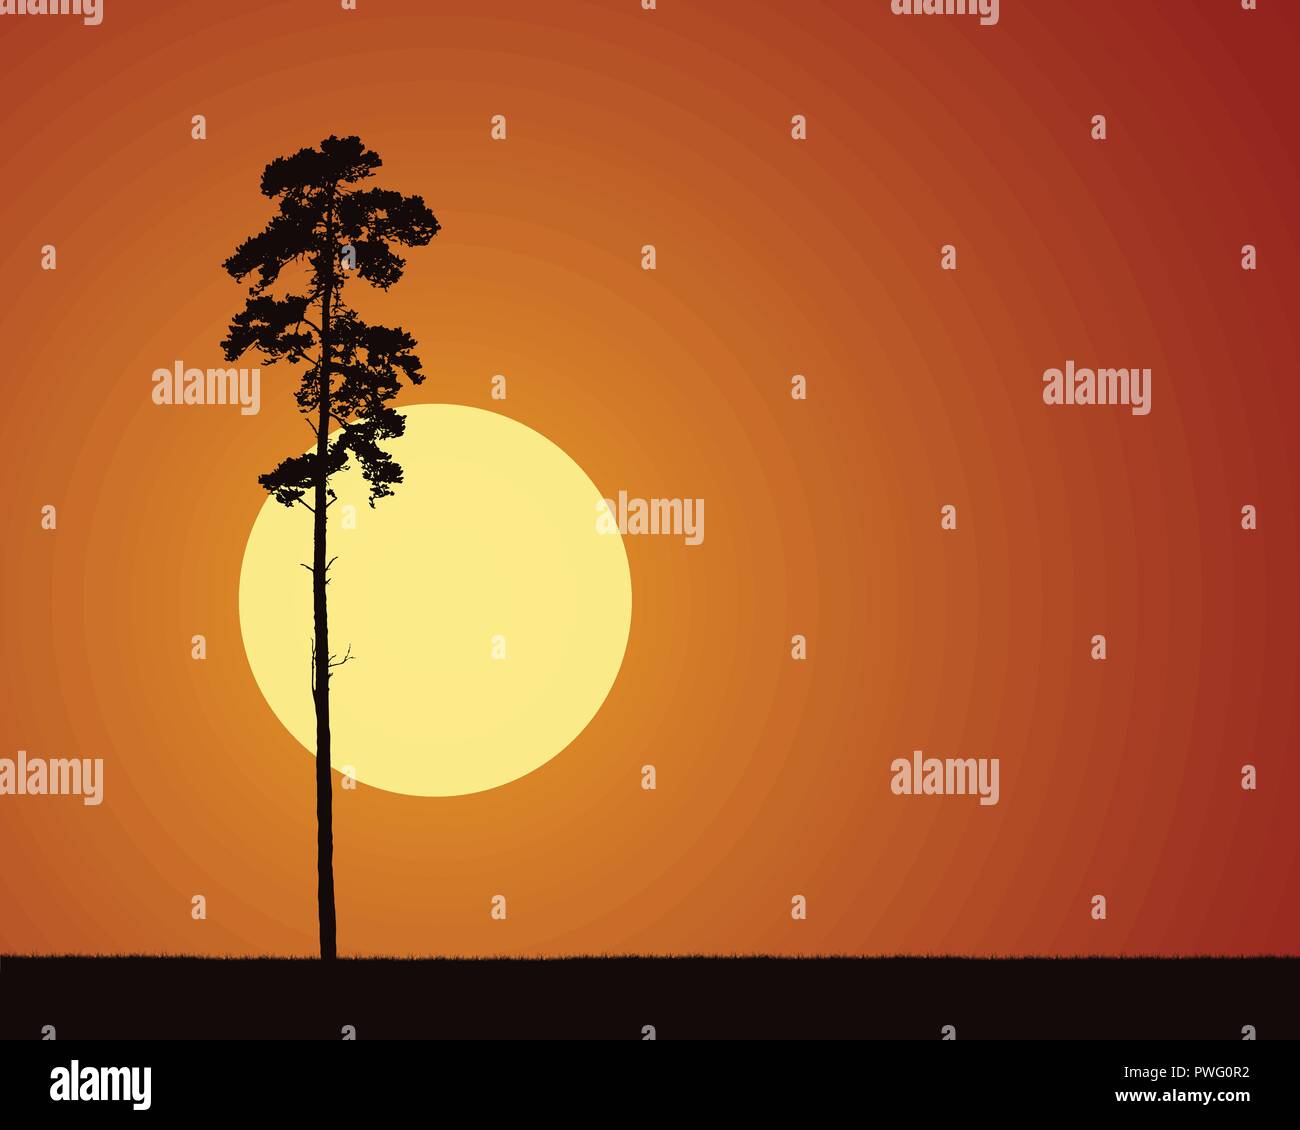 Realistische Abbildungen mit Silhouettiert Nadelbaumbaum und Gras, mit steigenden oder untergehende Sonne am Morgen oder Abend orange sky-Vektor Stock Vektor